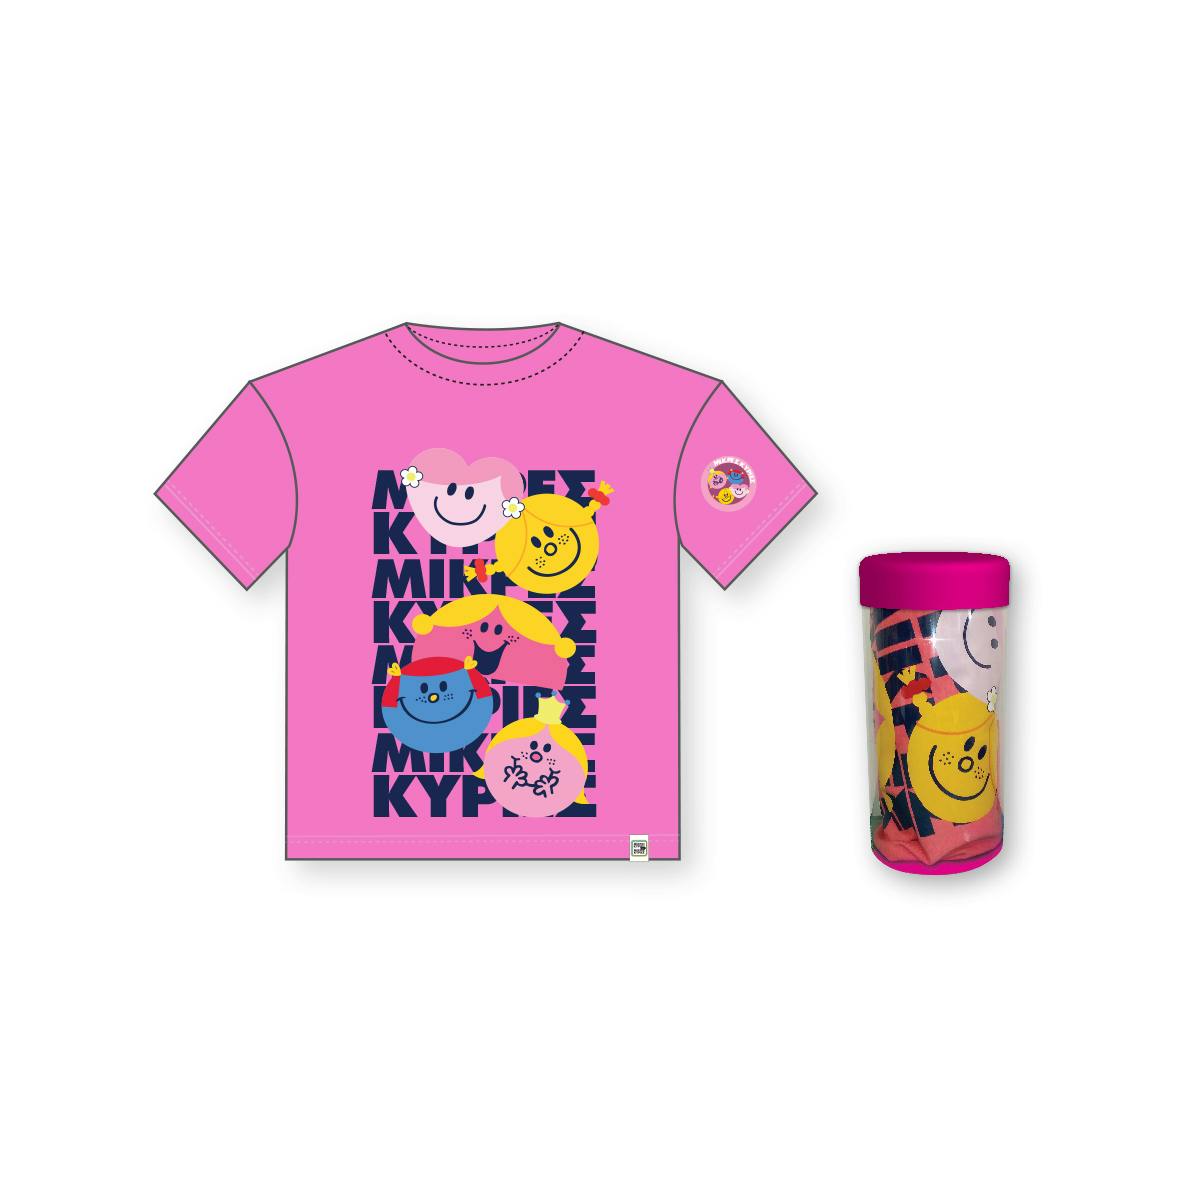 Μικρές Κυρίες - T-Shirt Παιδικό Μπλουζάκι | Συλλογή Μικροί Κύριοι - Μικρές Κυρίες | Χάρτινη Πολη  Ηλικία 3-4 HP.TST.0005